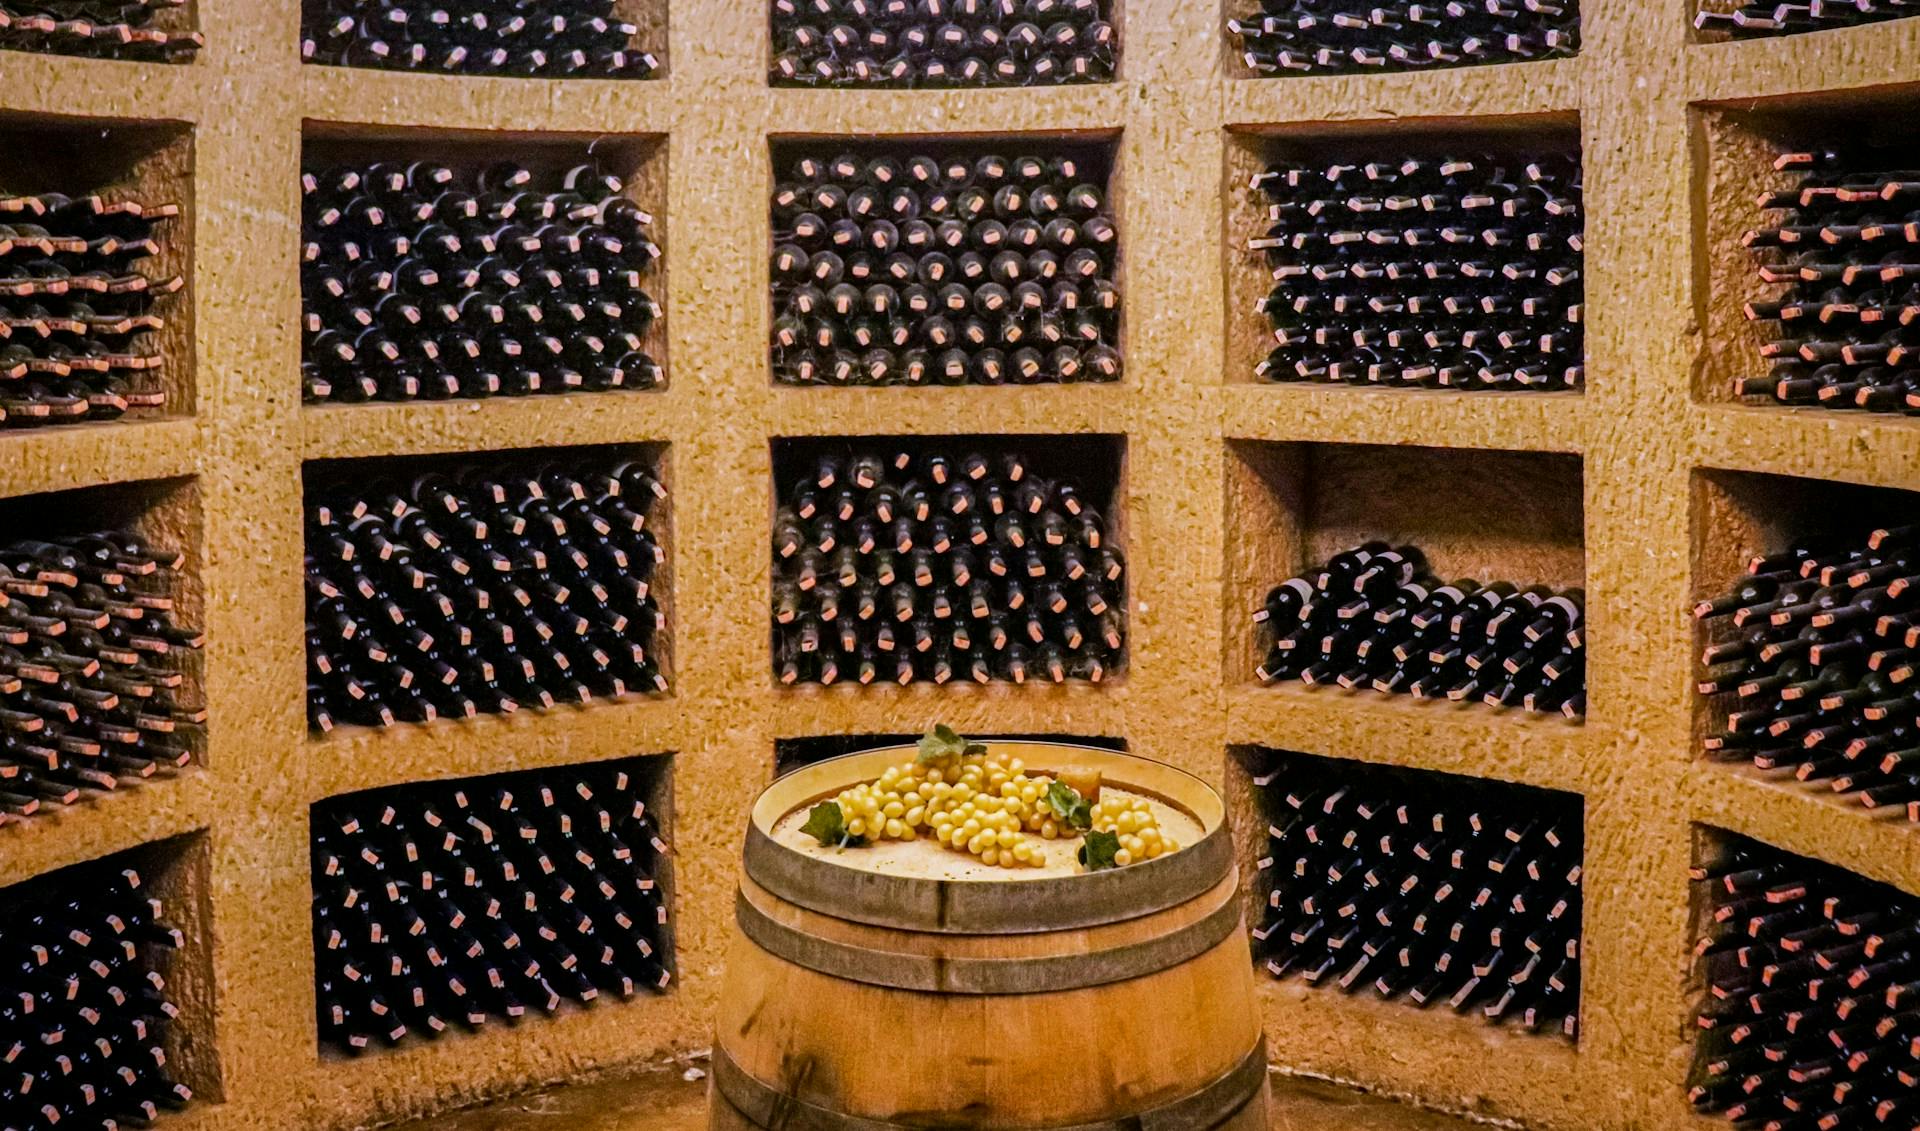 Weinregale voller Weinflaschen und ein Fass mit Weißtrauben in der Mitte